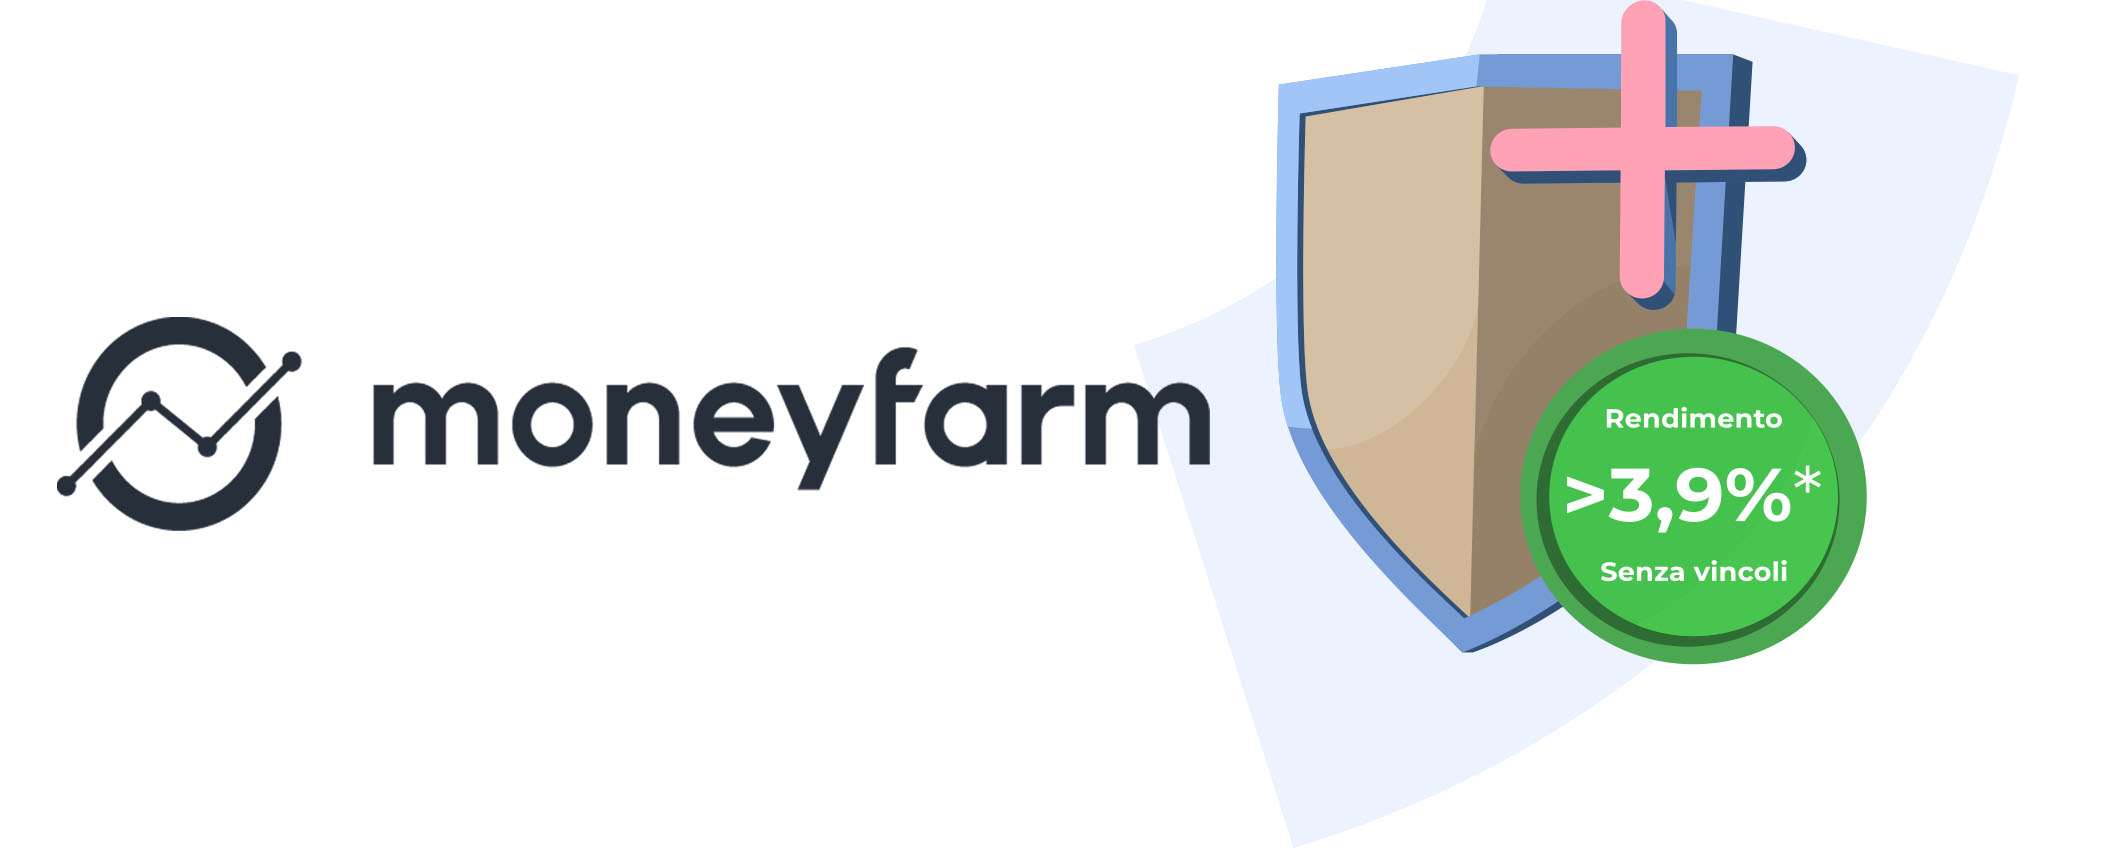 Moneyfarm: la piattaforma sicura per investire con fiducia